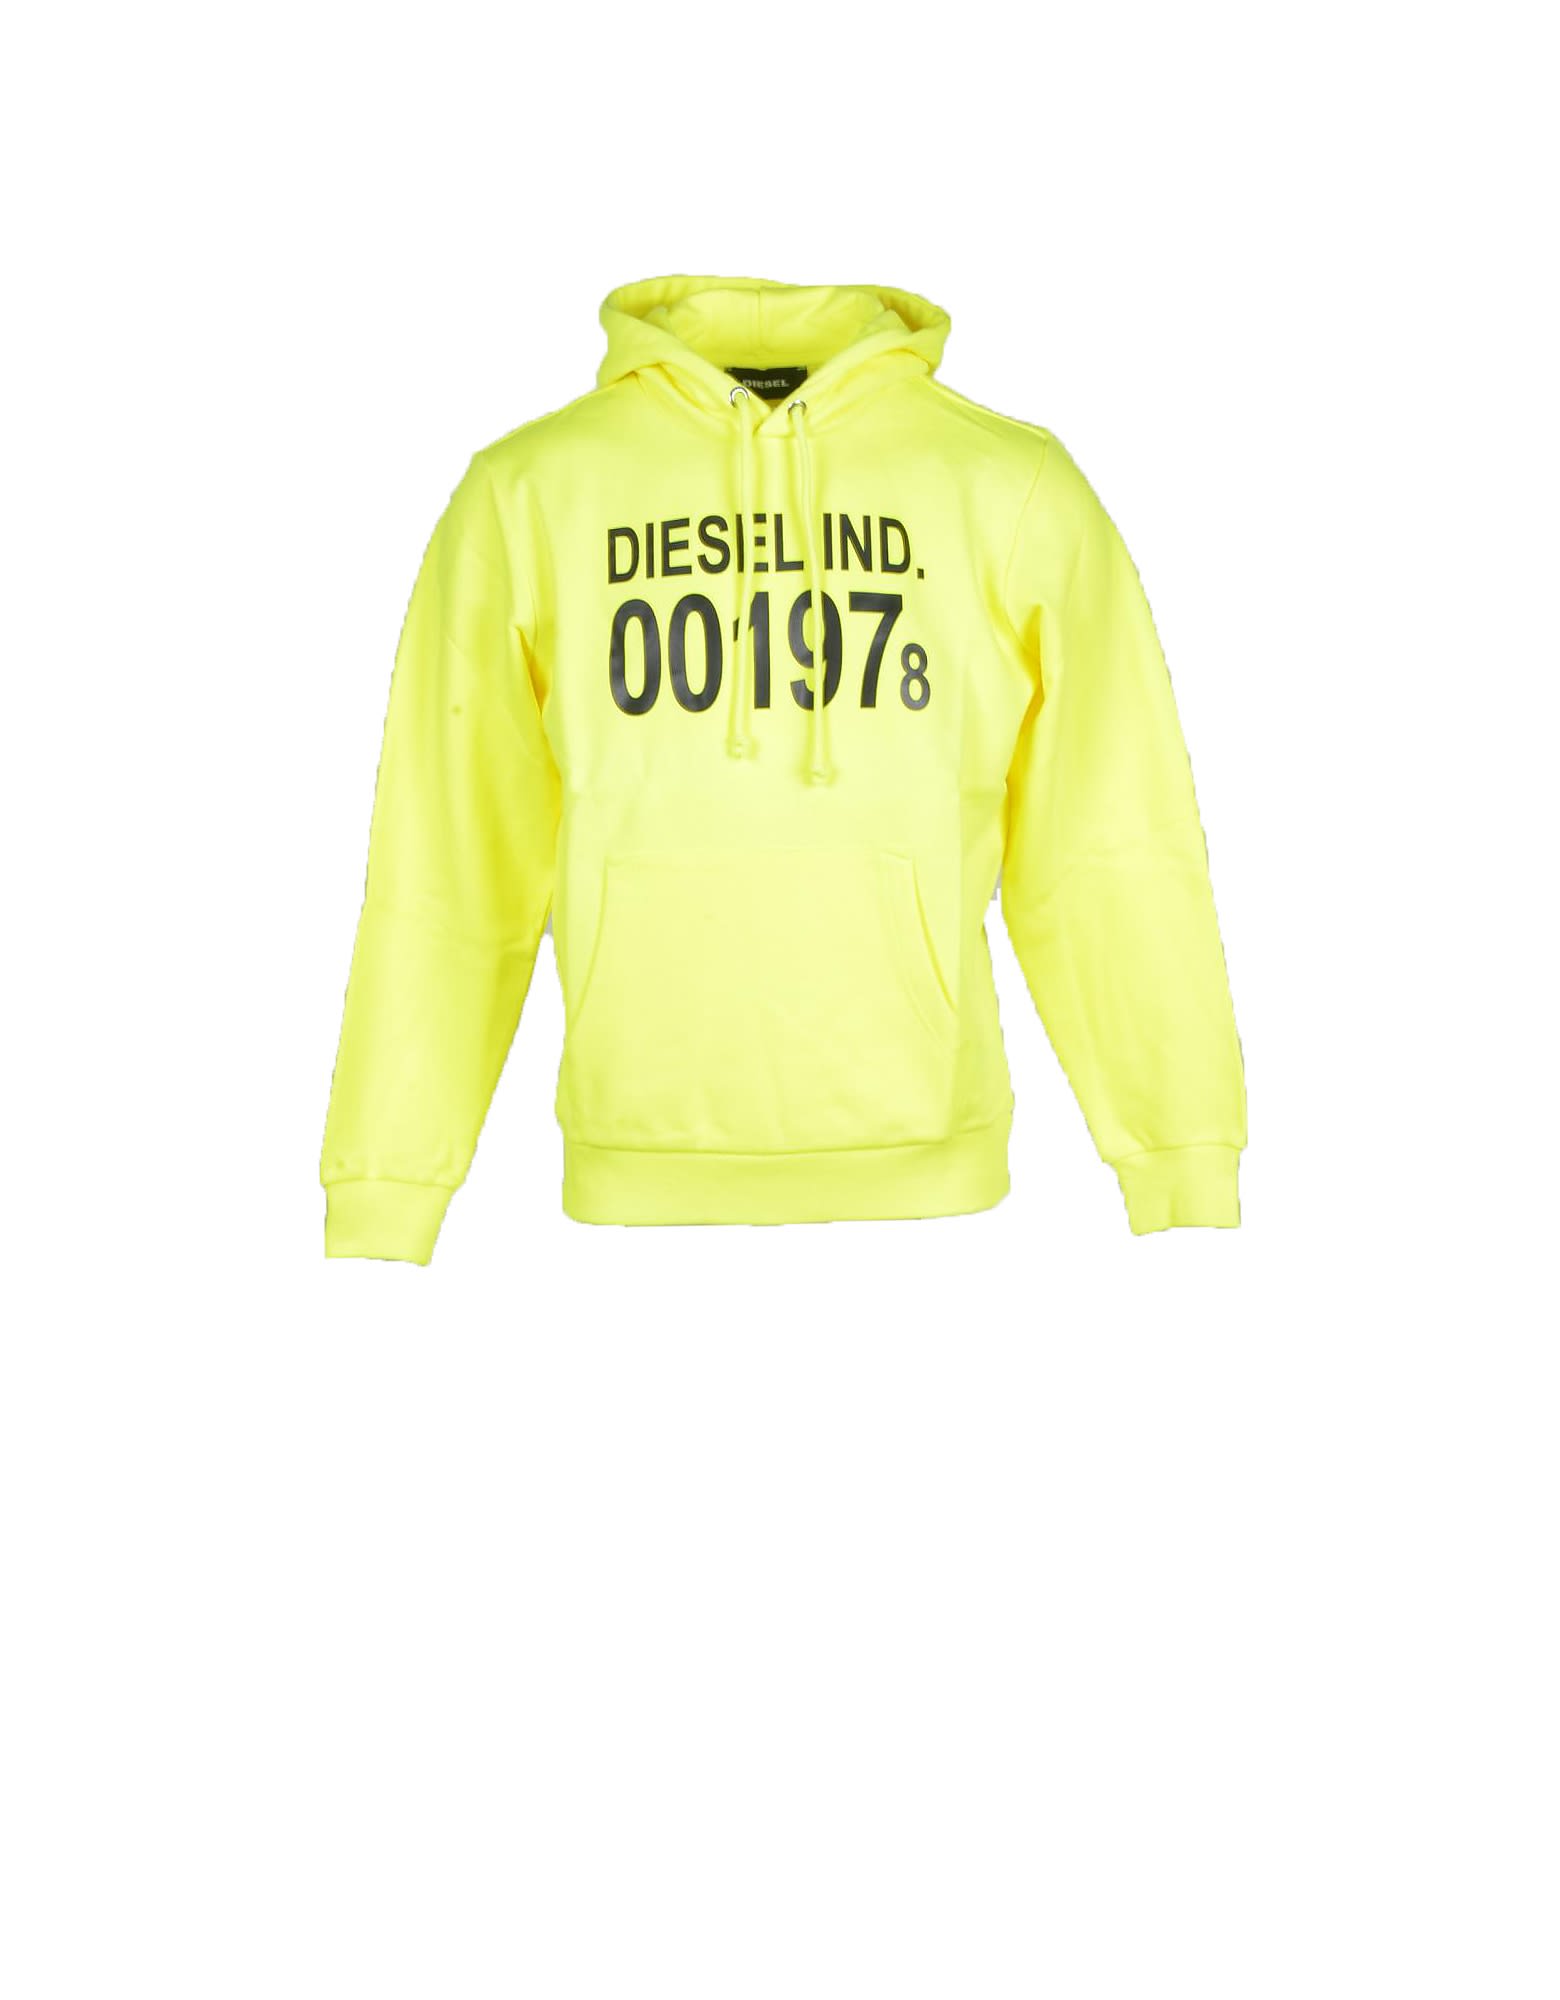 Diesel Mens Yellow Sweatshirt